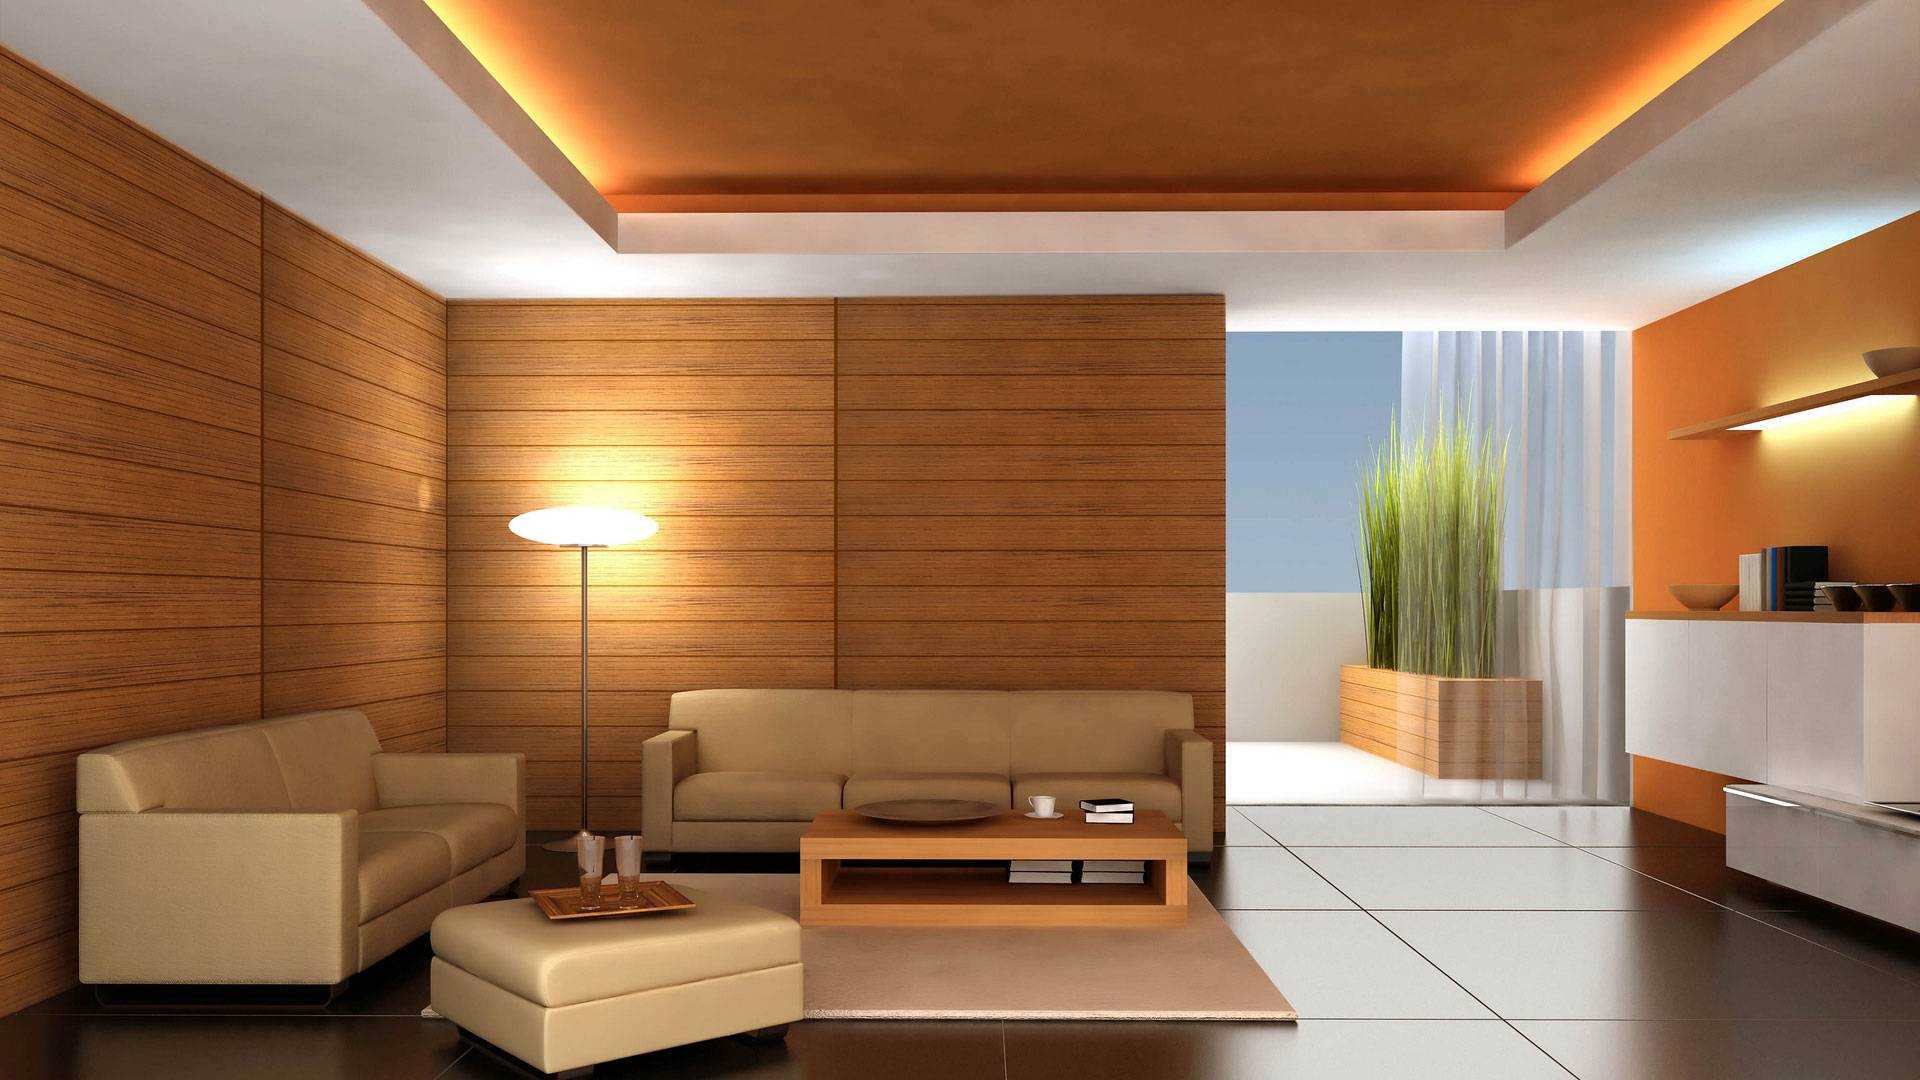 Варианты отделки потолков в квартире - современные способы устройства и виды конструкций, детали на фото и видео